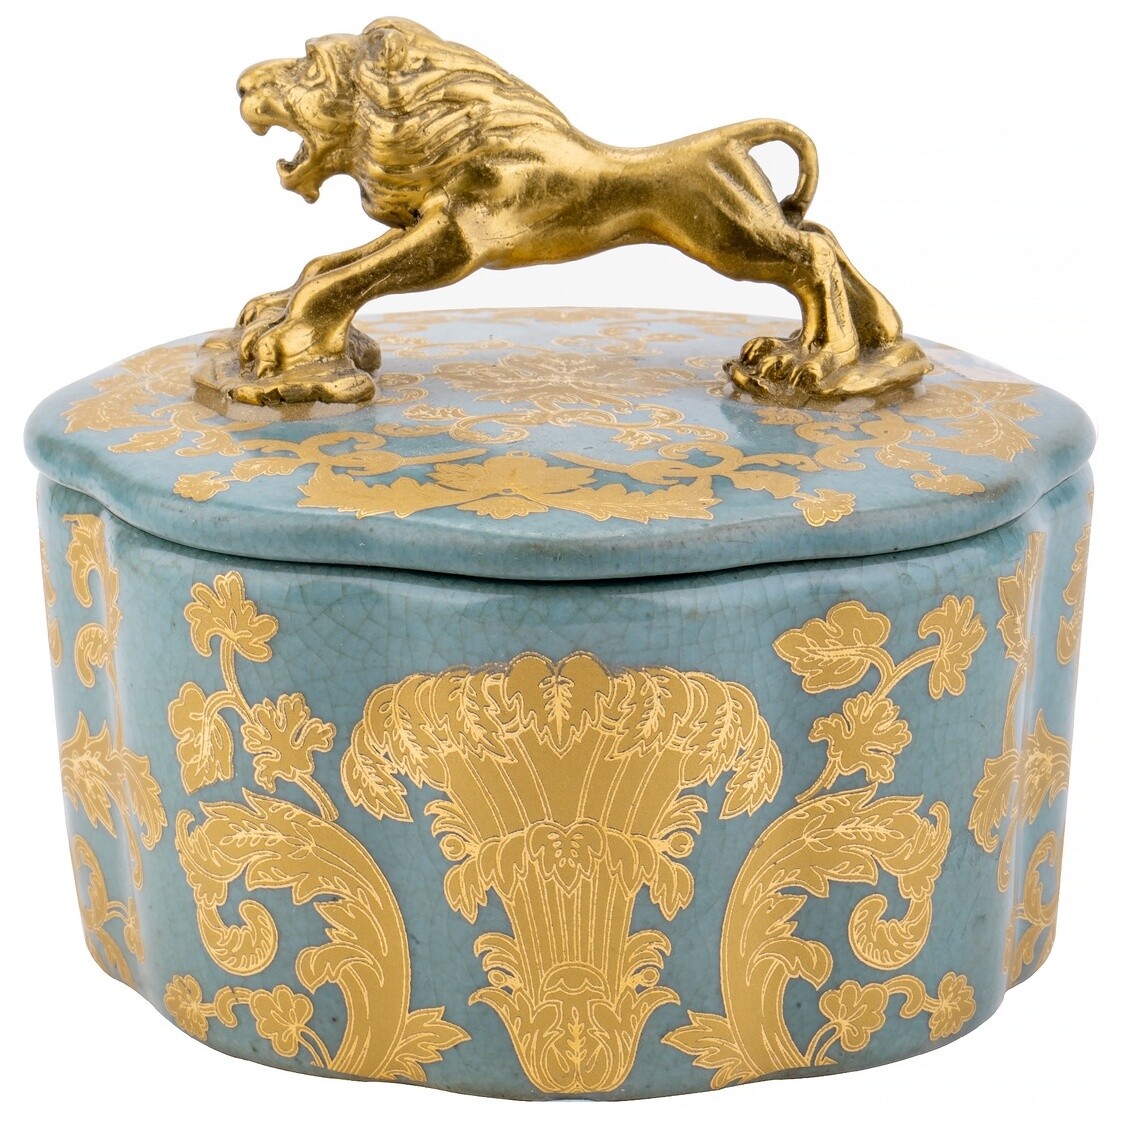 Шкатулка фарфоровая со львом на крышке 12x10см голубая Glasar